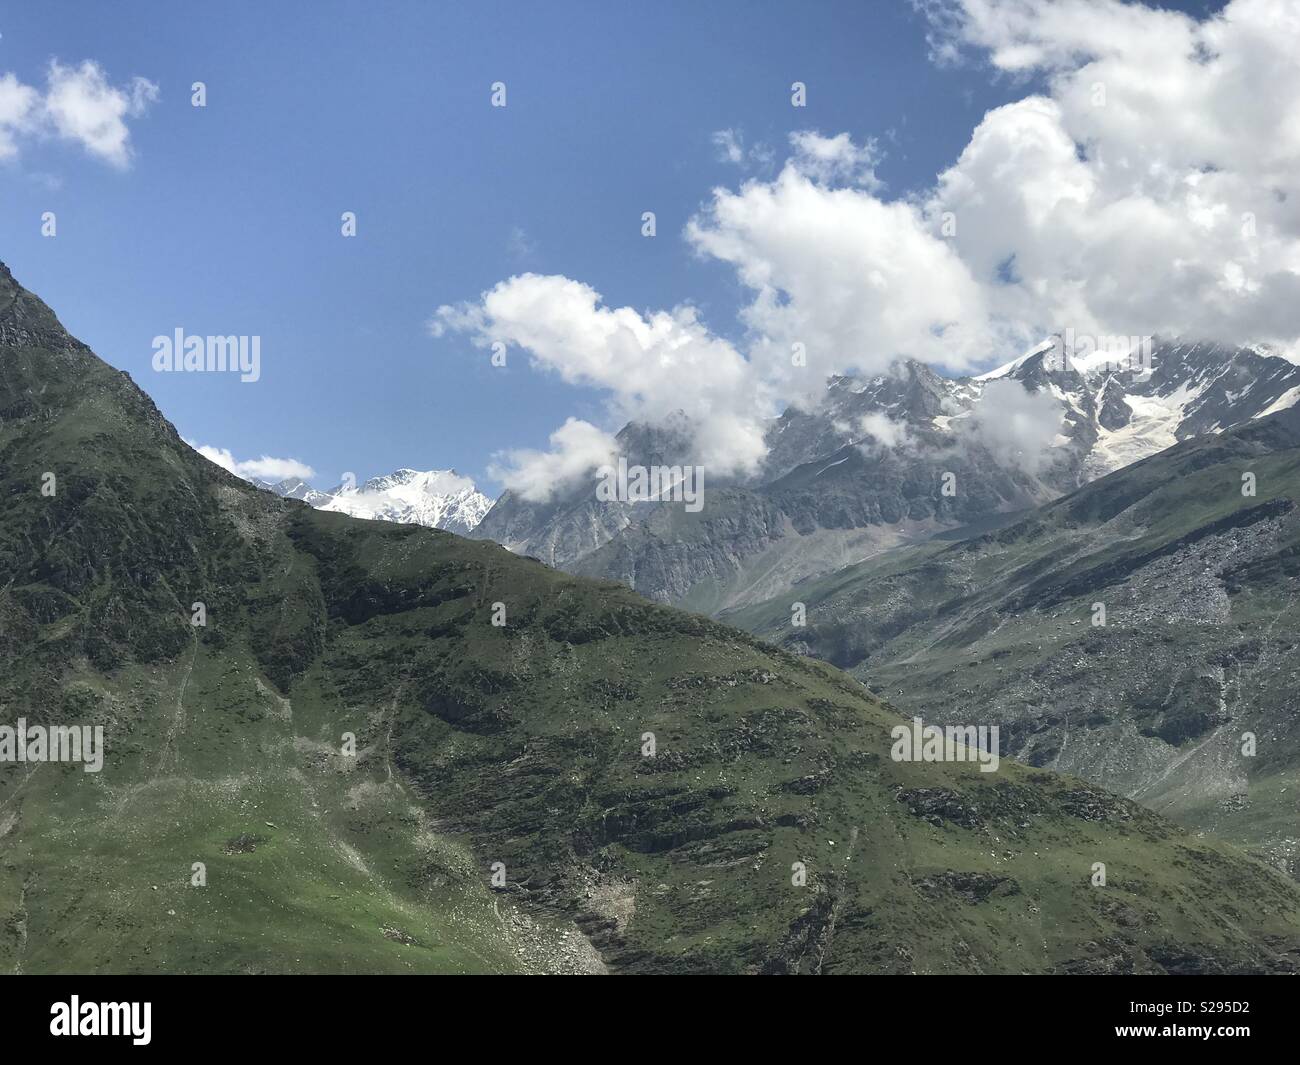 Green Himalayan mountains Stock Photo